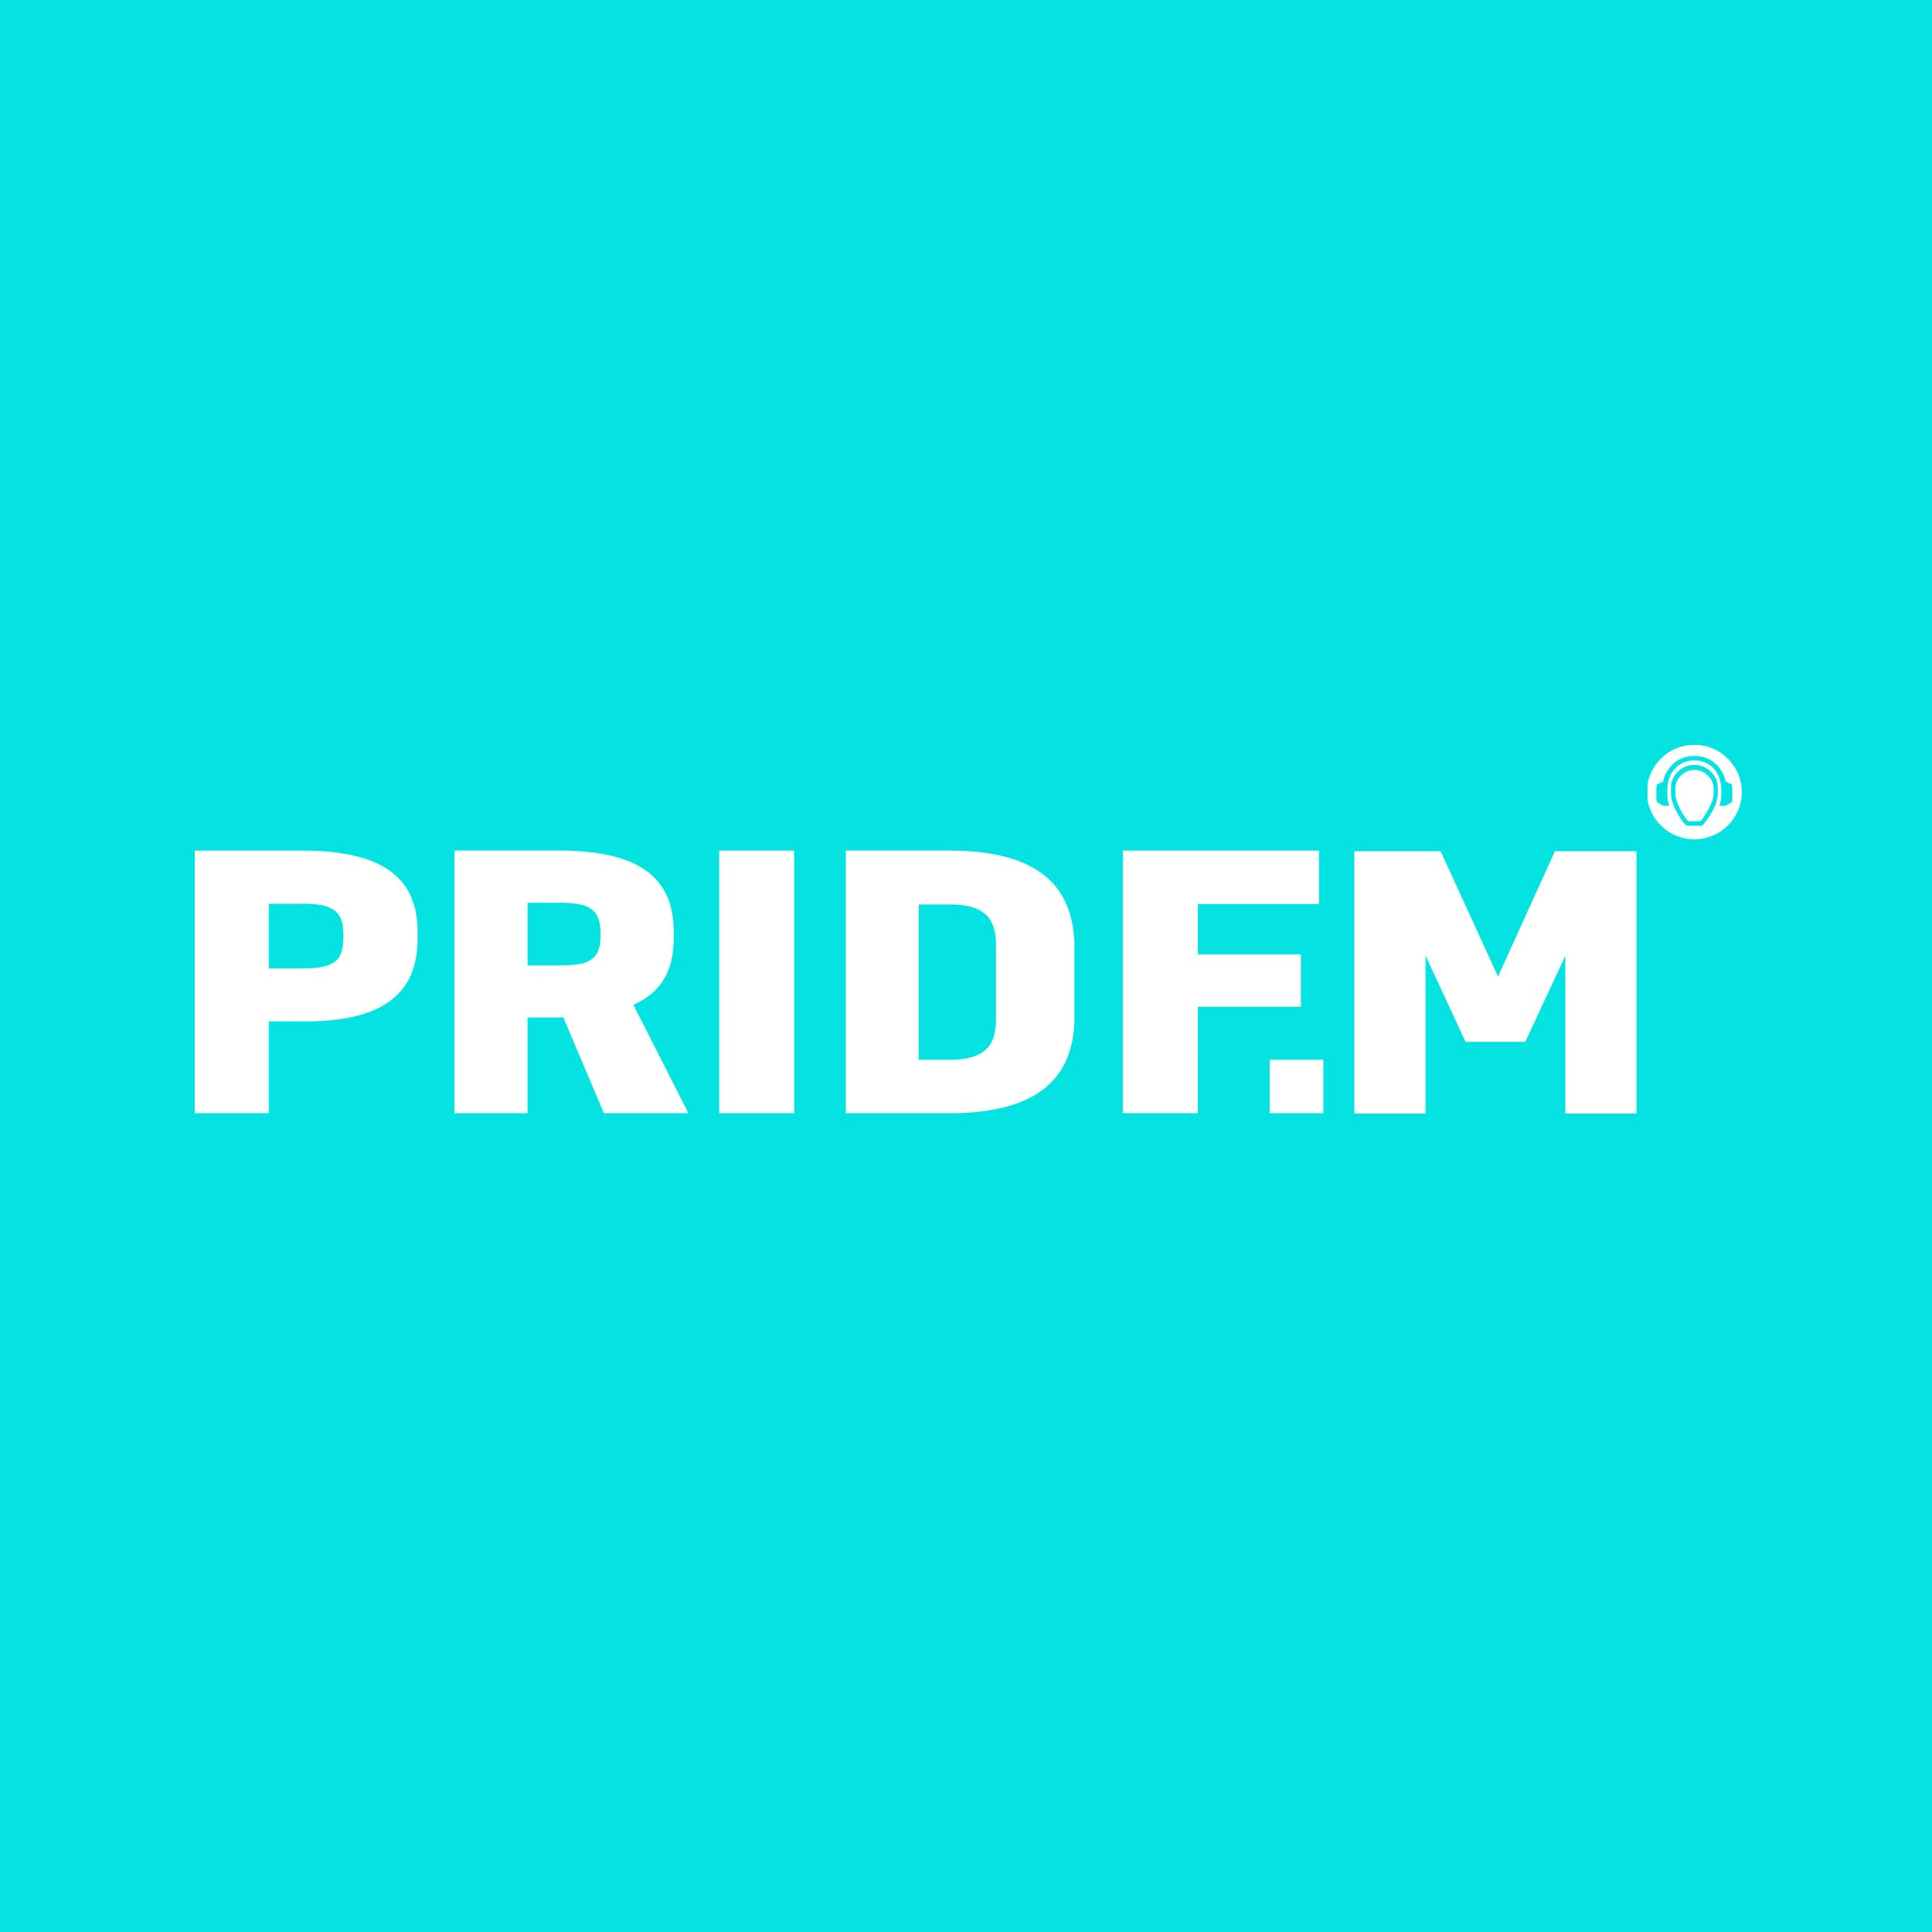 PRIDE FM